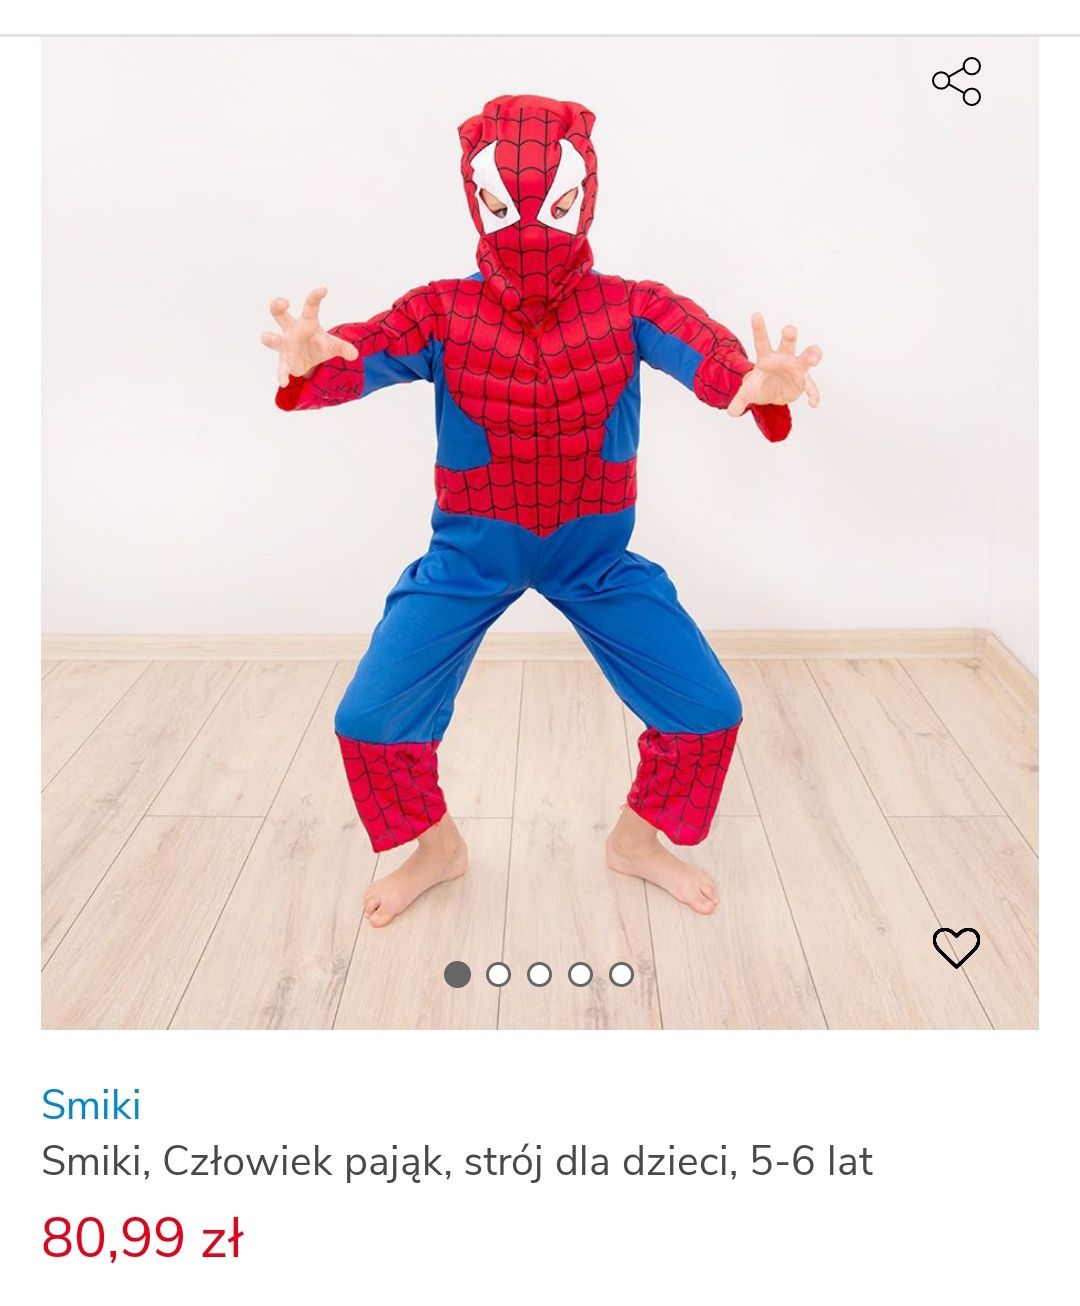 Człowiek pająk strój dla dzieci 5-6 lat